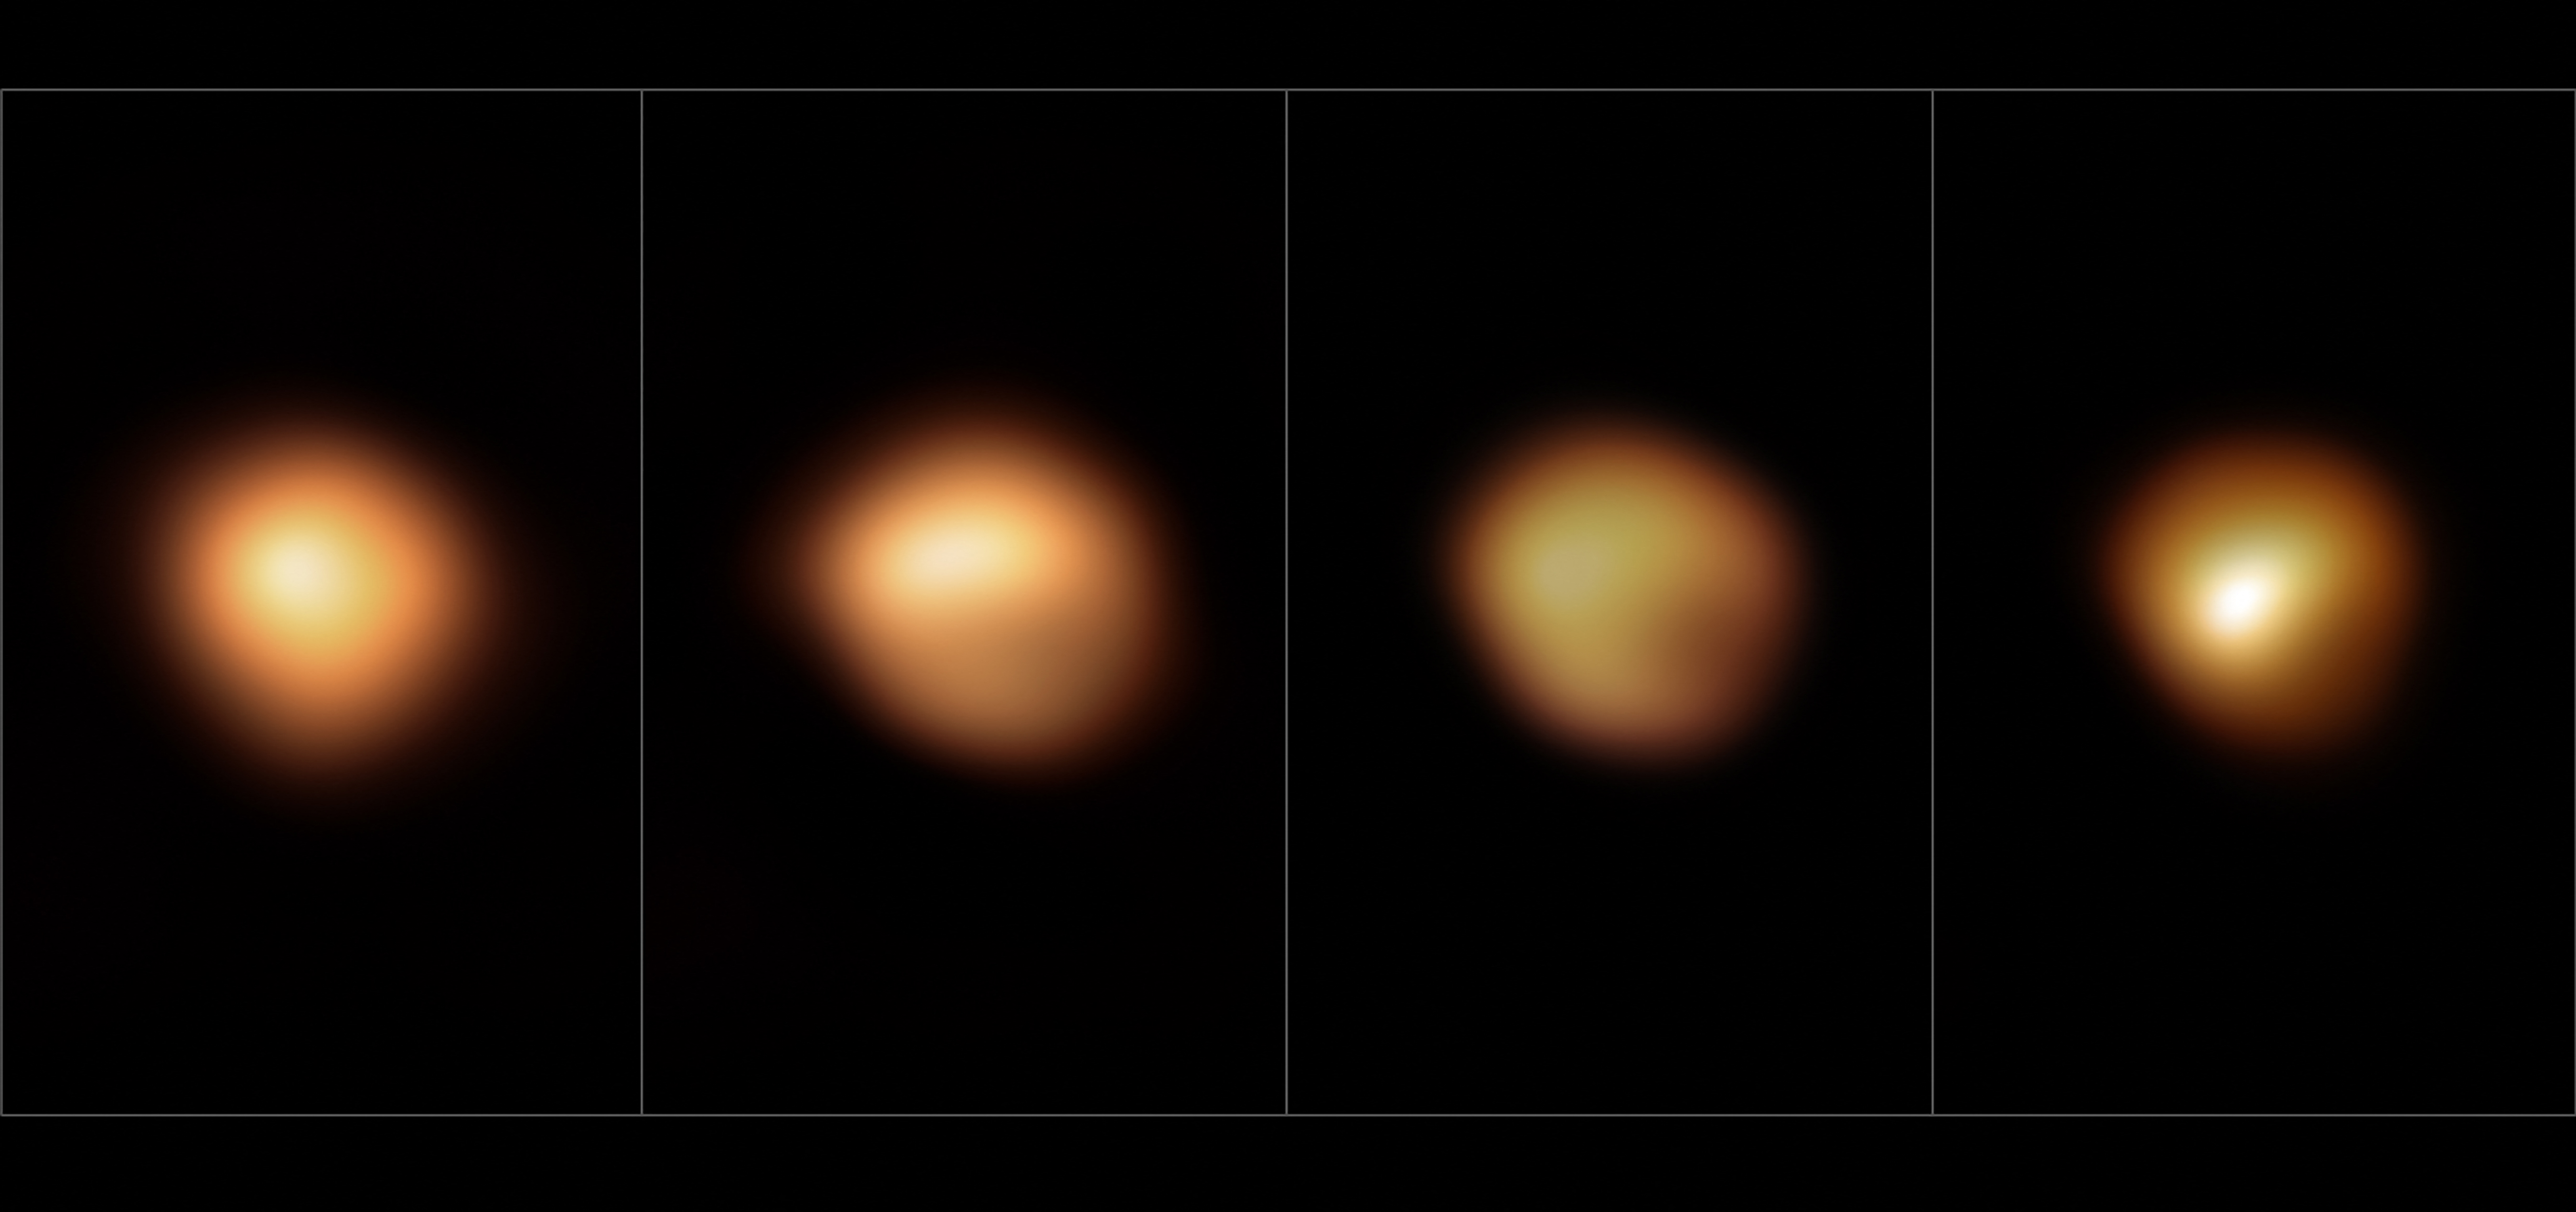 Balra a Betelgeuze normális fényessége 2019 januárjában, a következő három képen a fokozatos halványodás látható (2019. december, 2020. január és március)